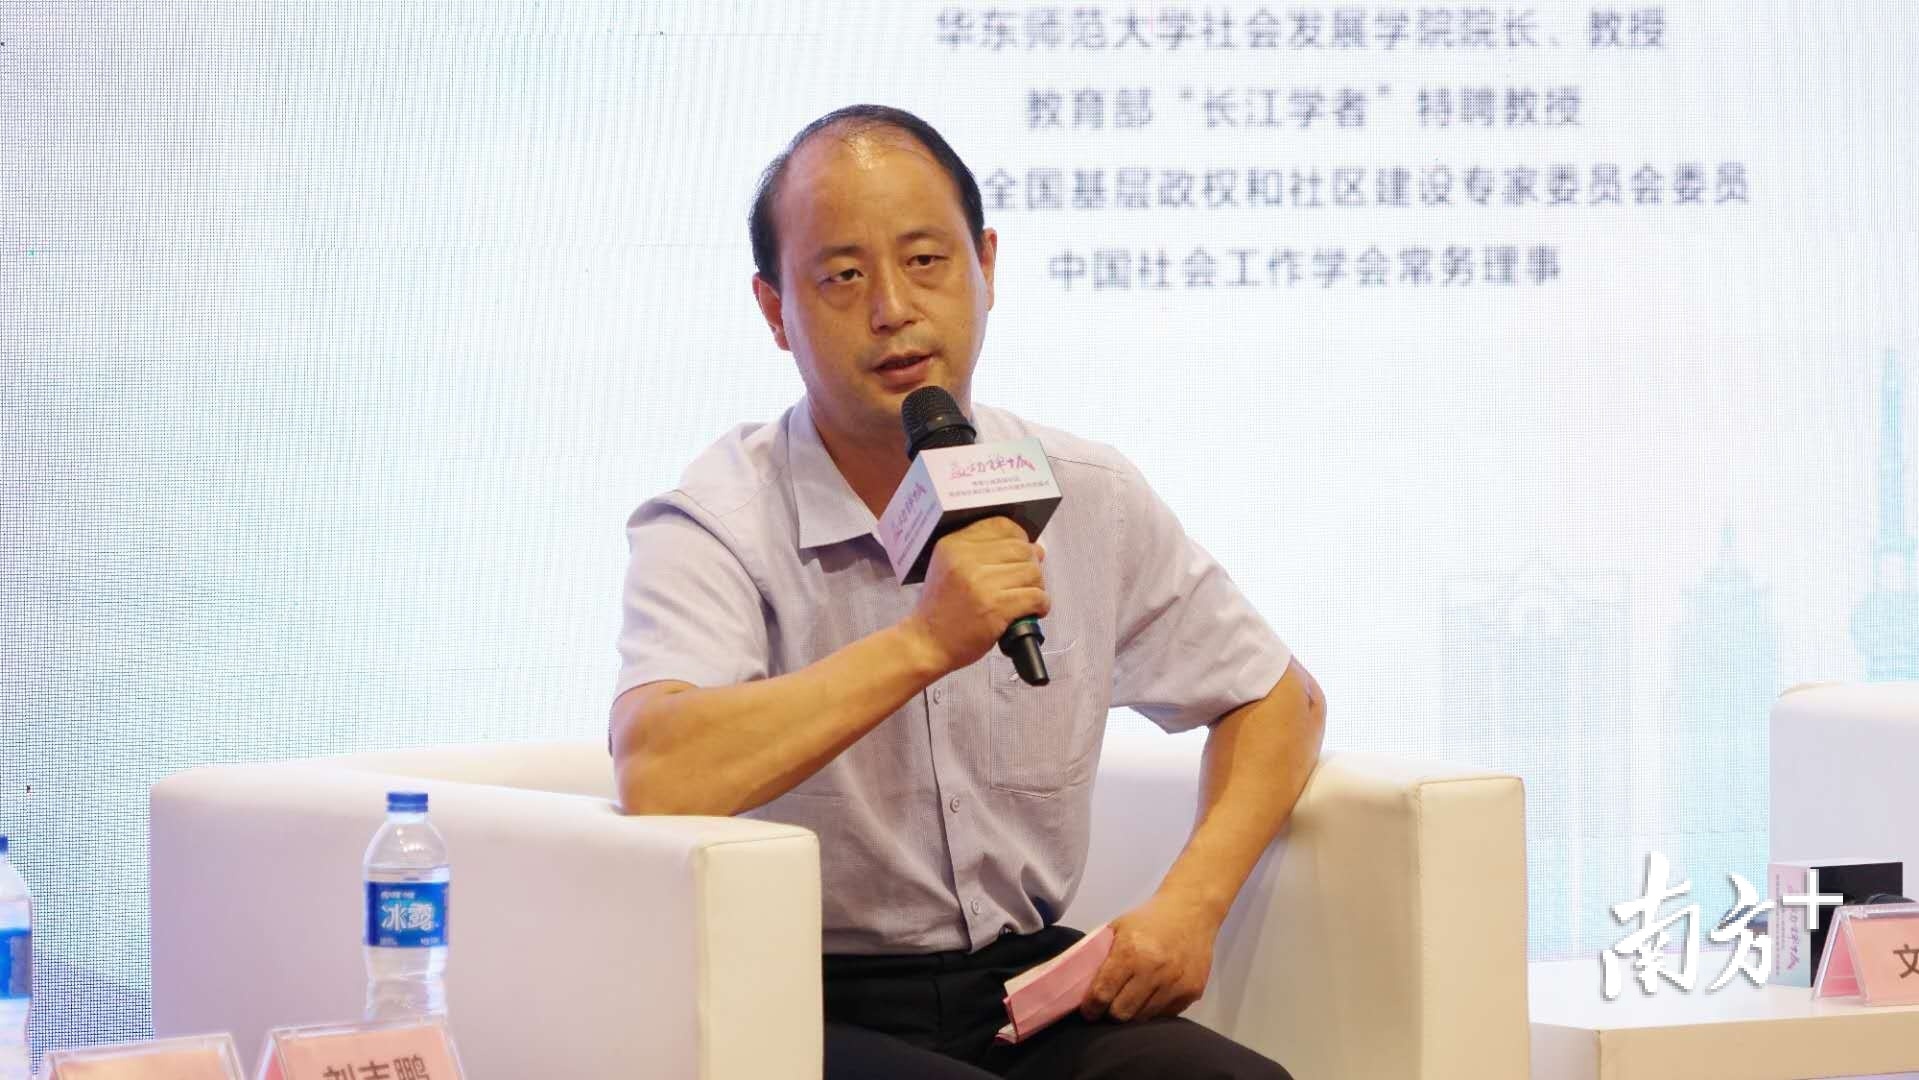 华南师范大学政治与公共管理学院副教授刘志鹏